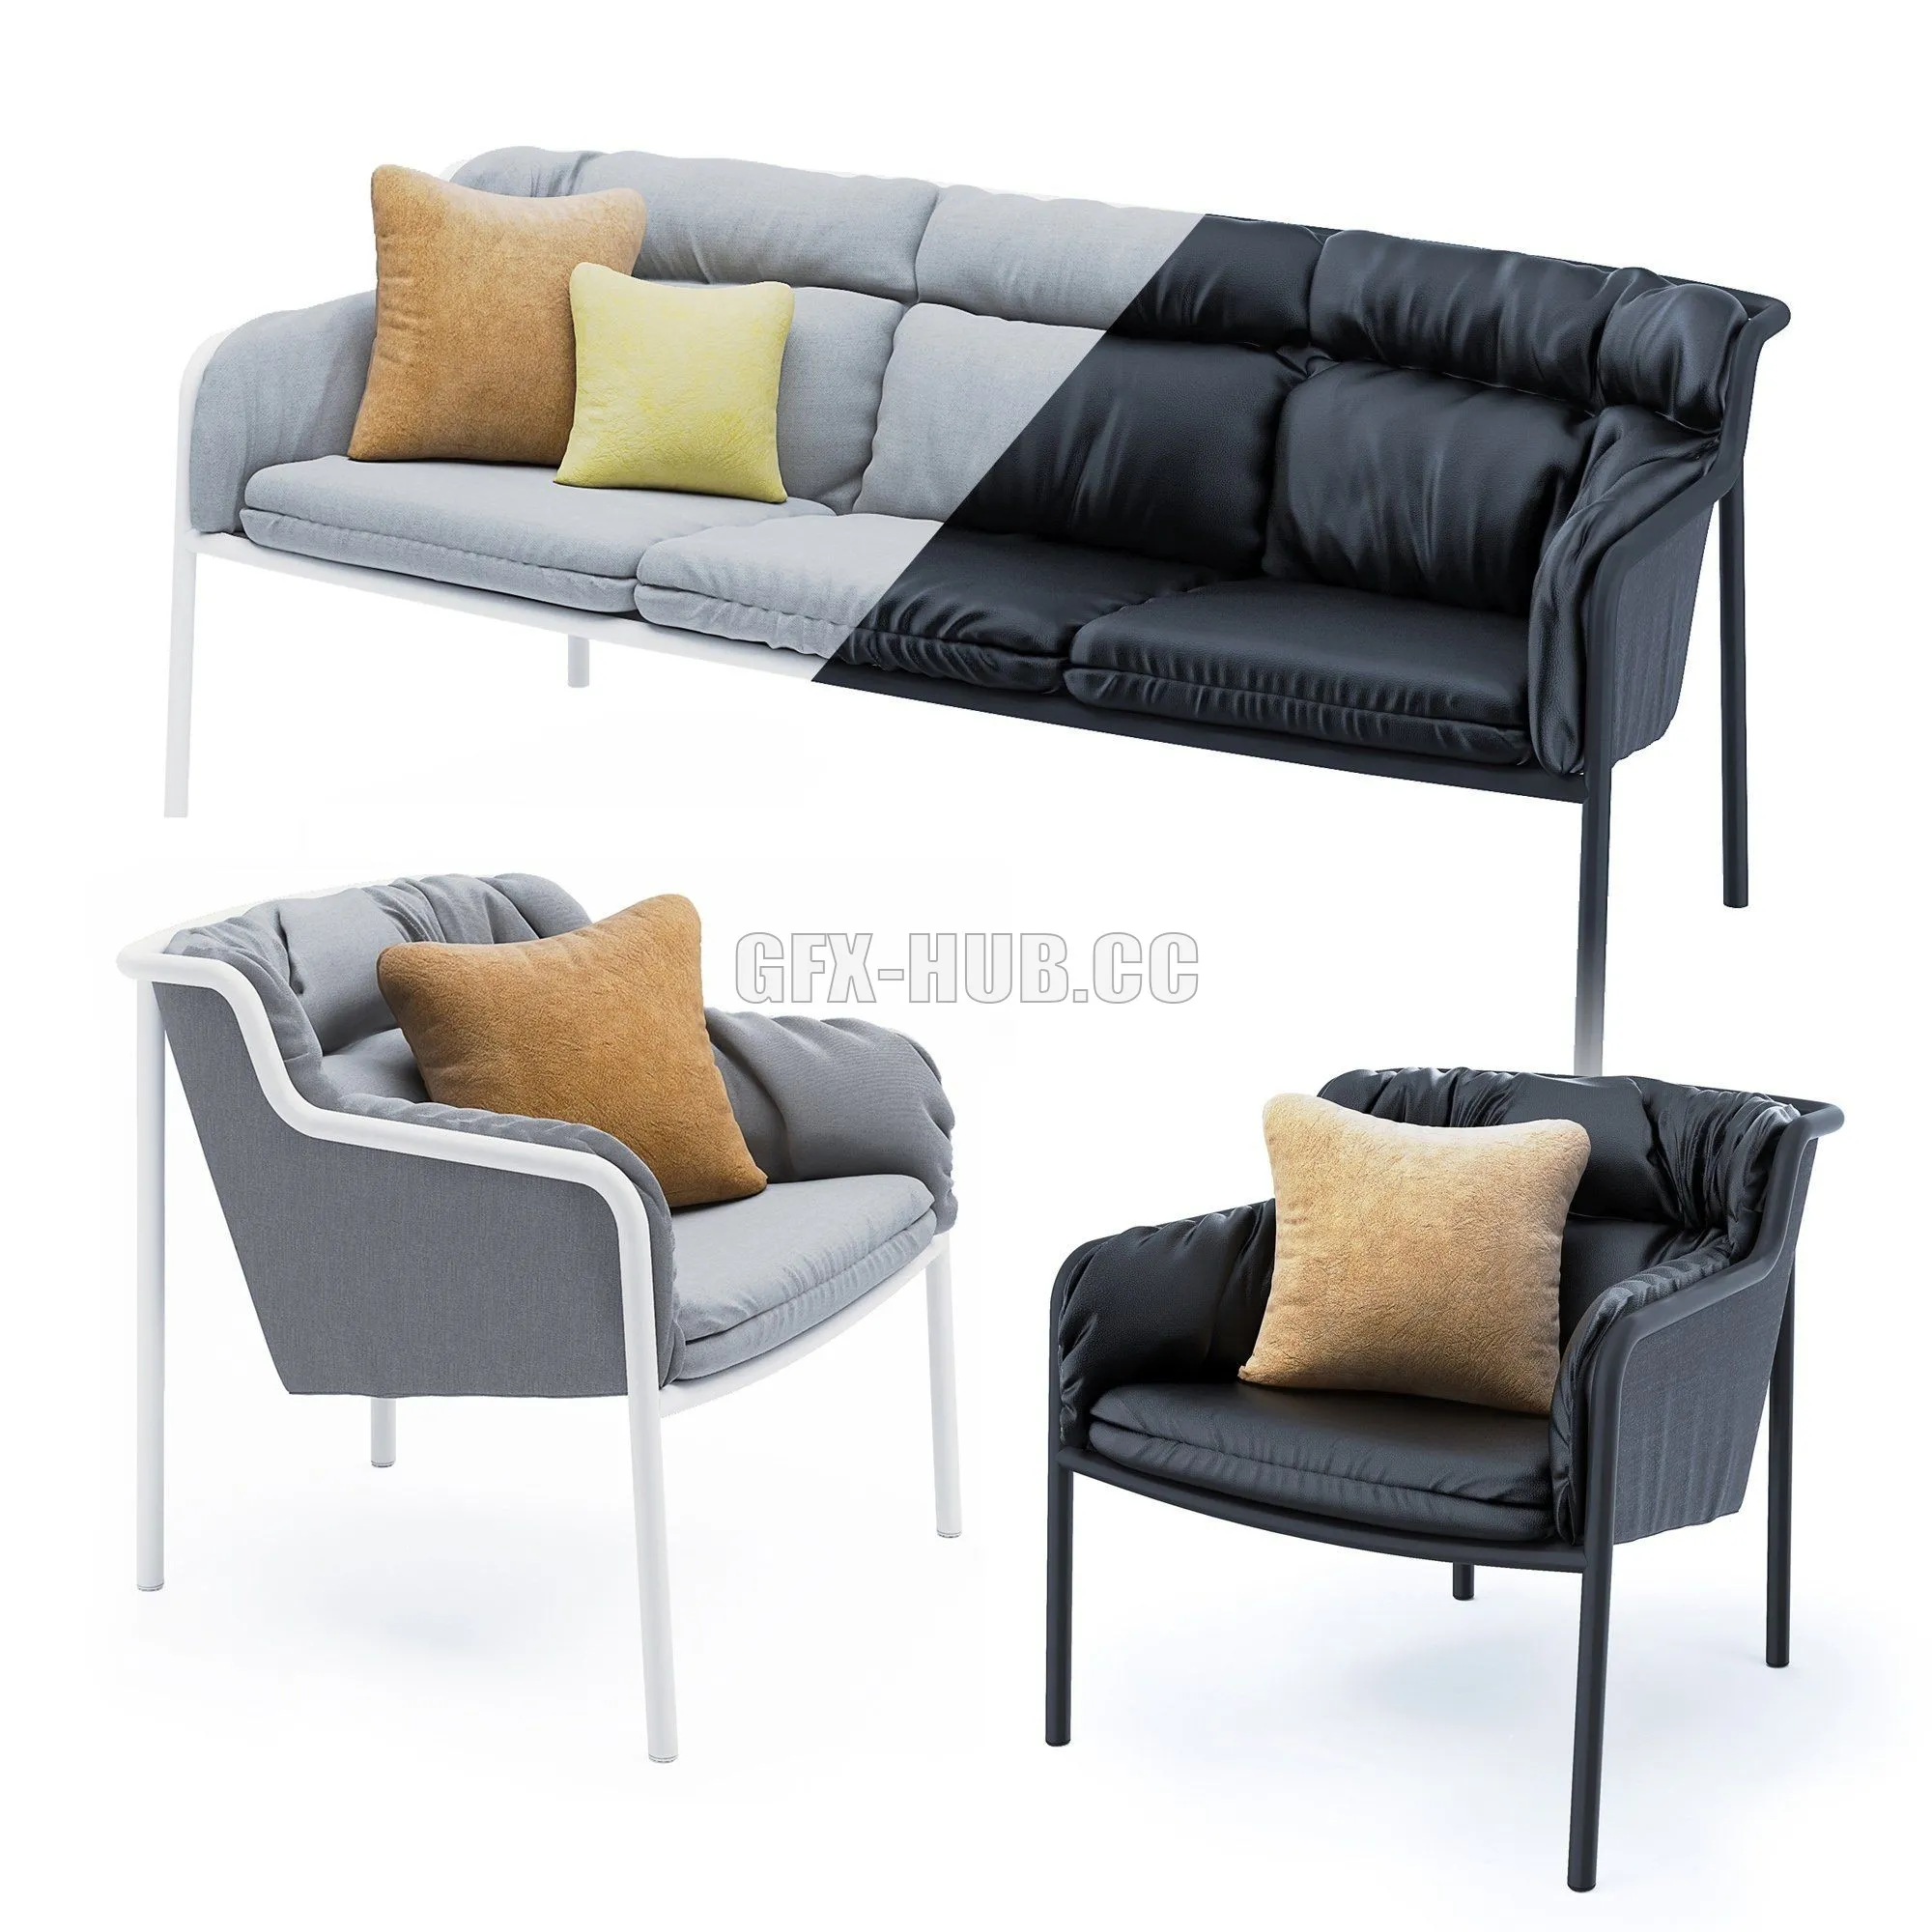 SOFA – Haddoc set sofa and armchair